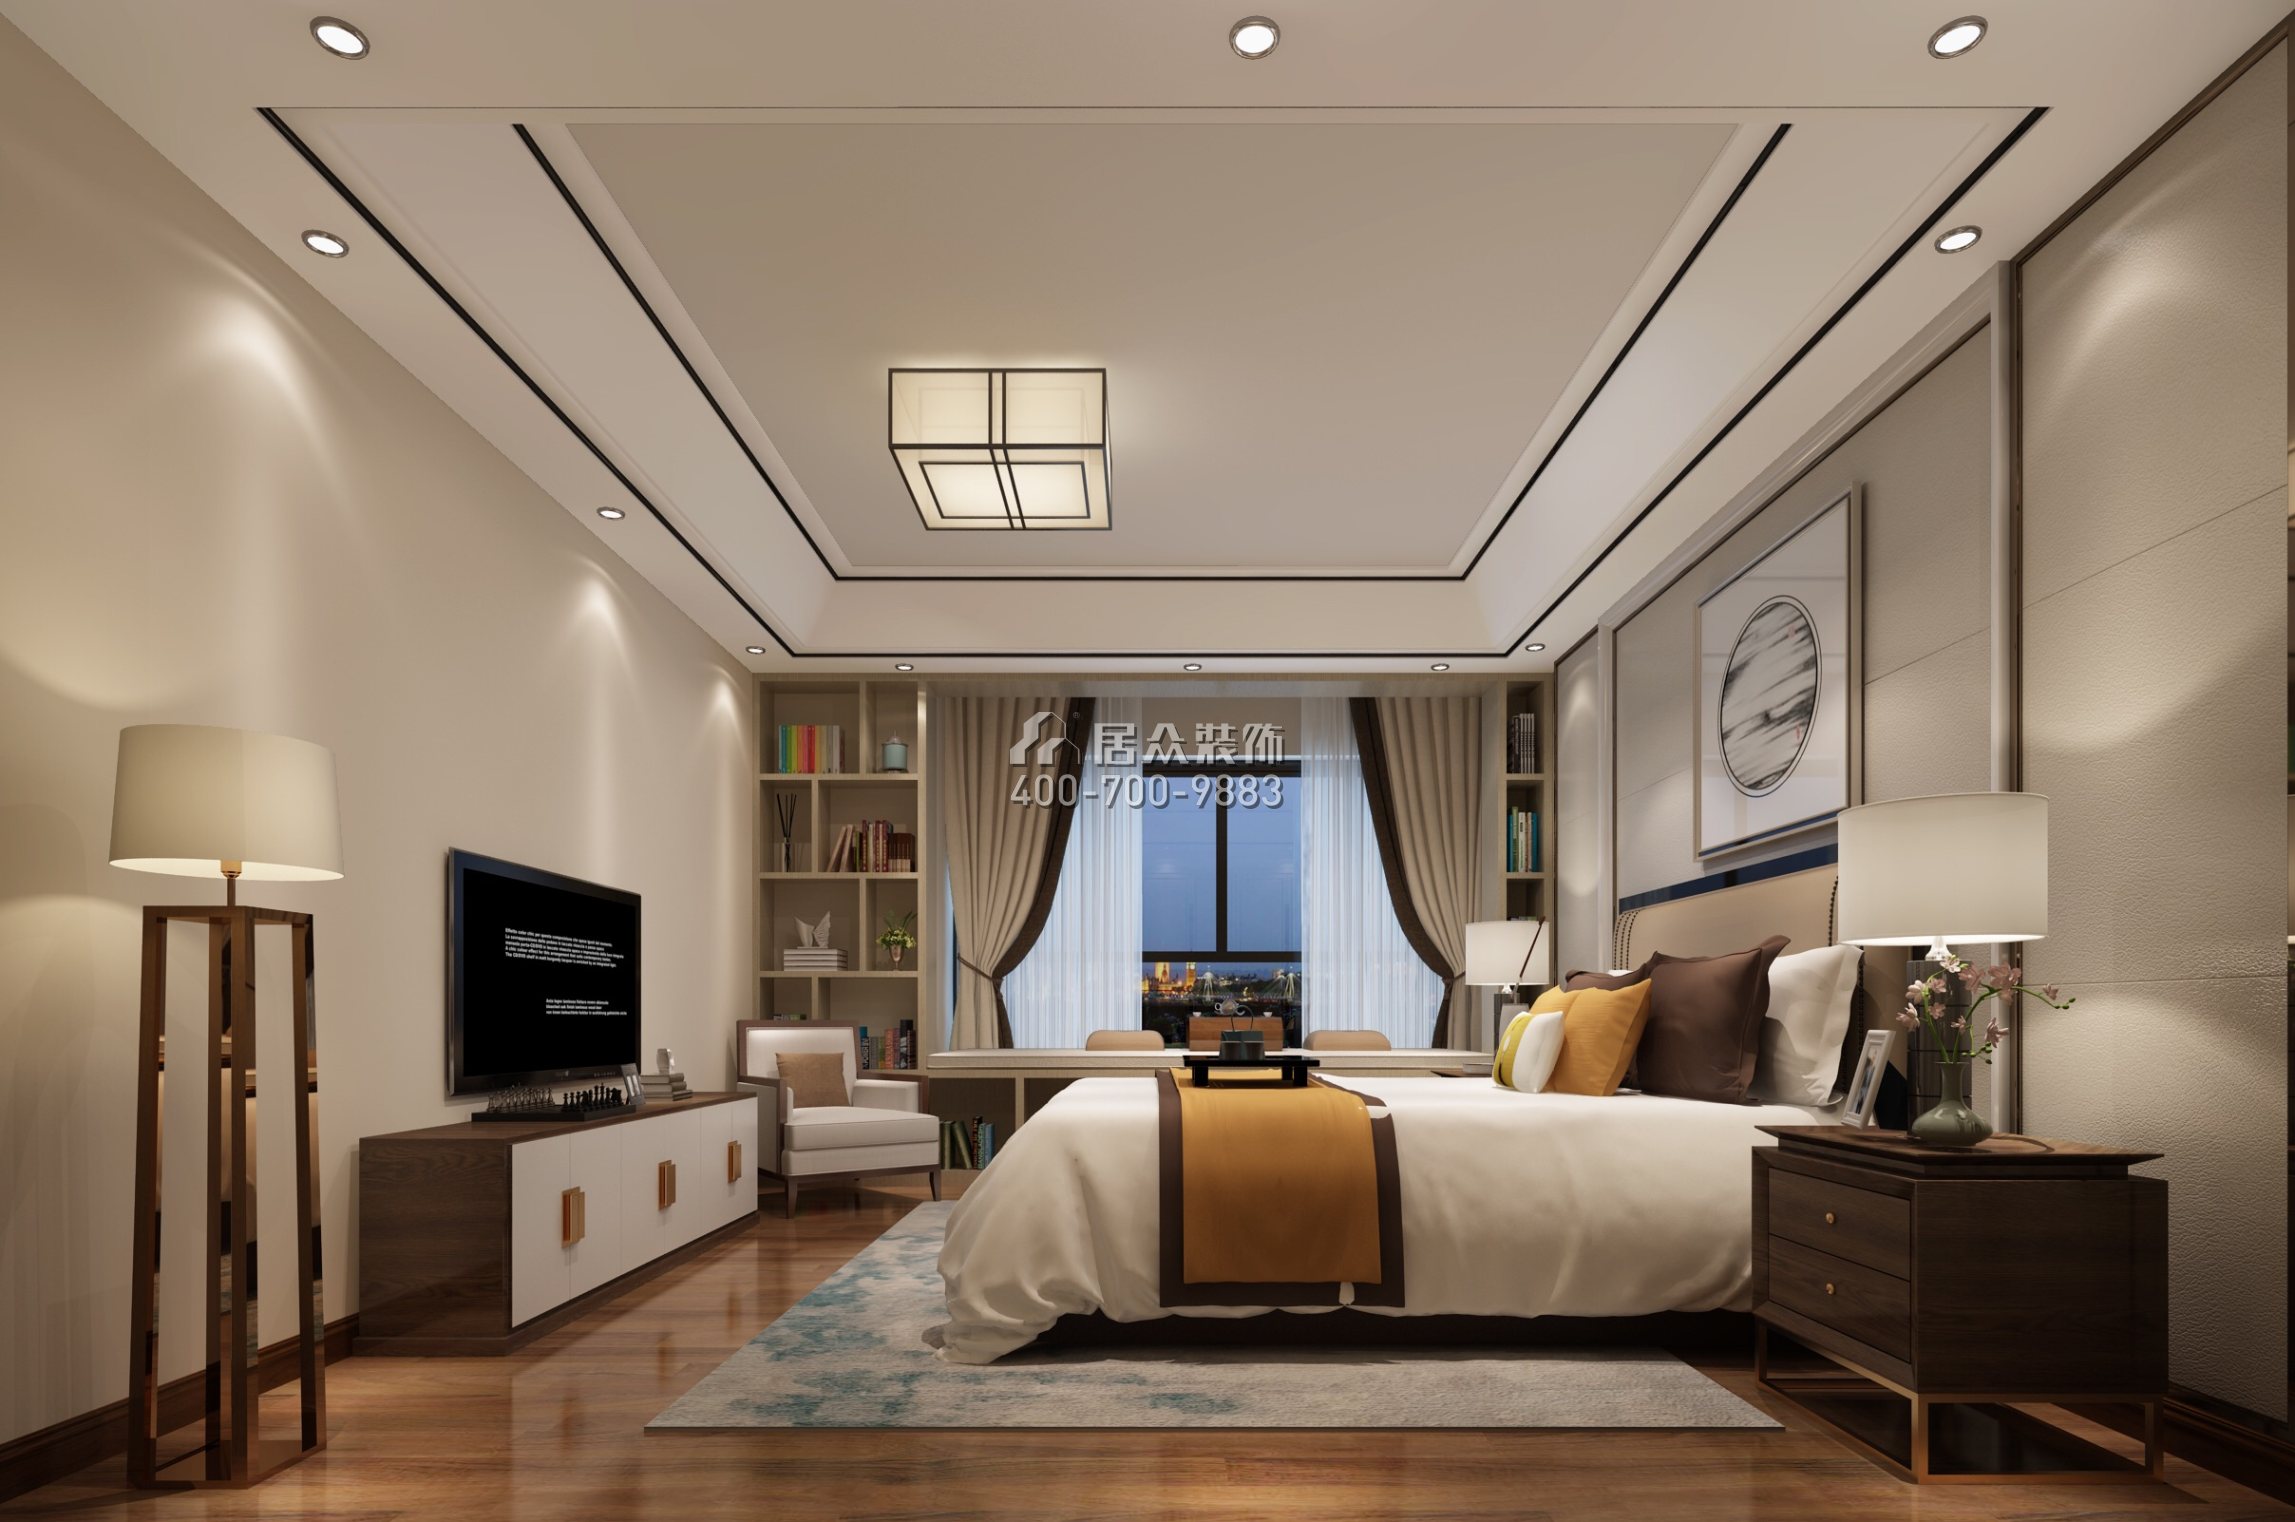 美的君兰江山200平方米中式风格平层户型卧室装修效果图